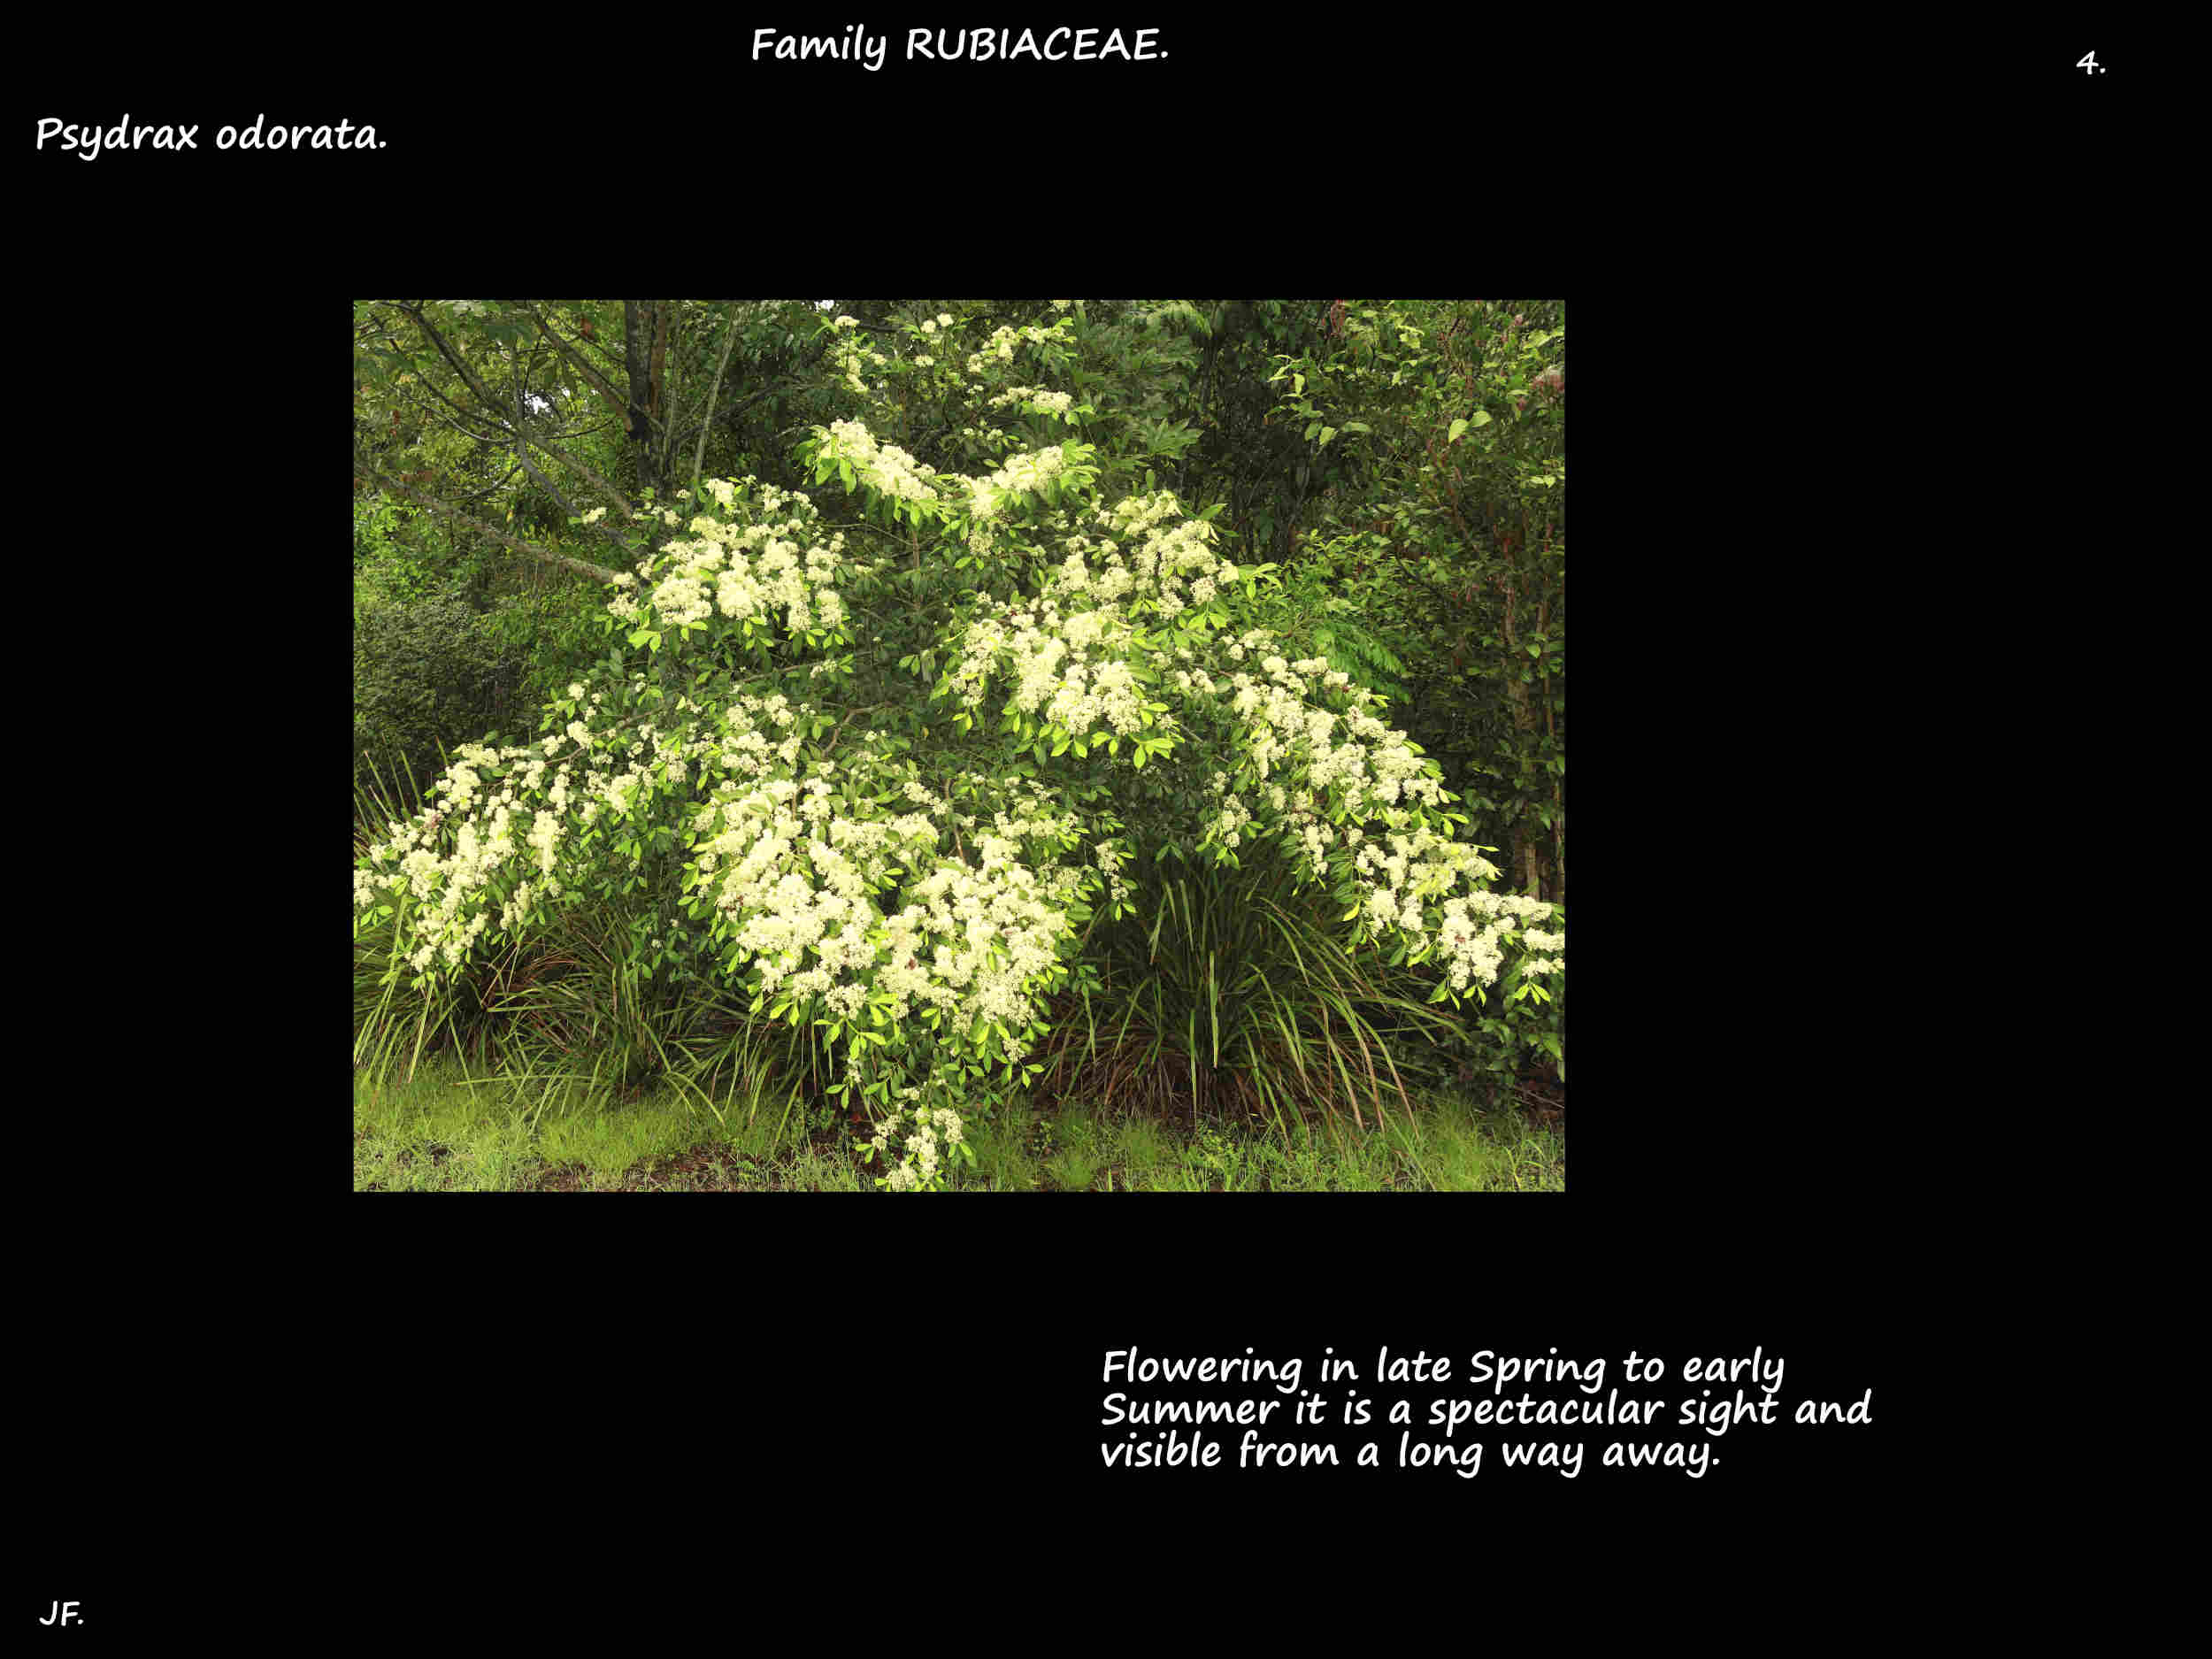 4 Psydrax odorata tree in flower